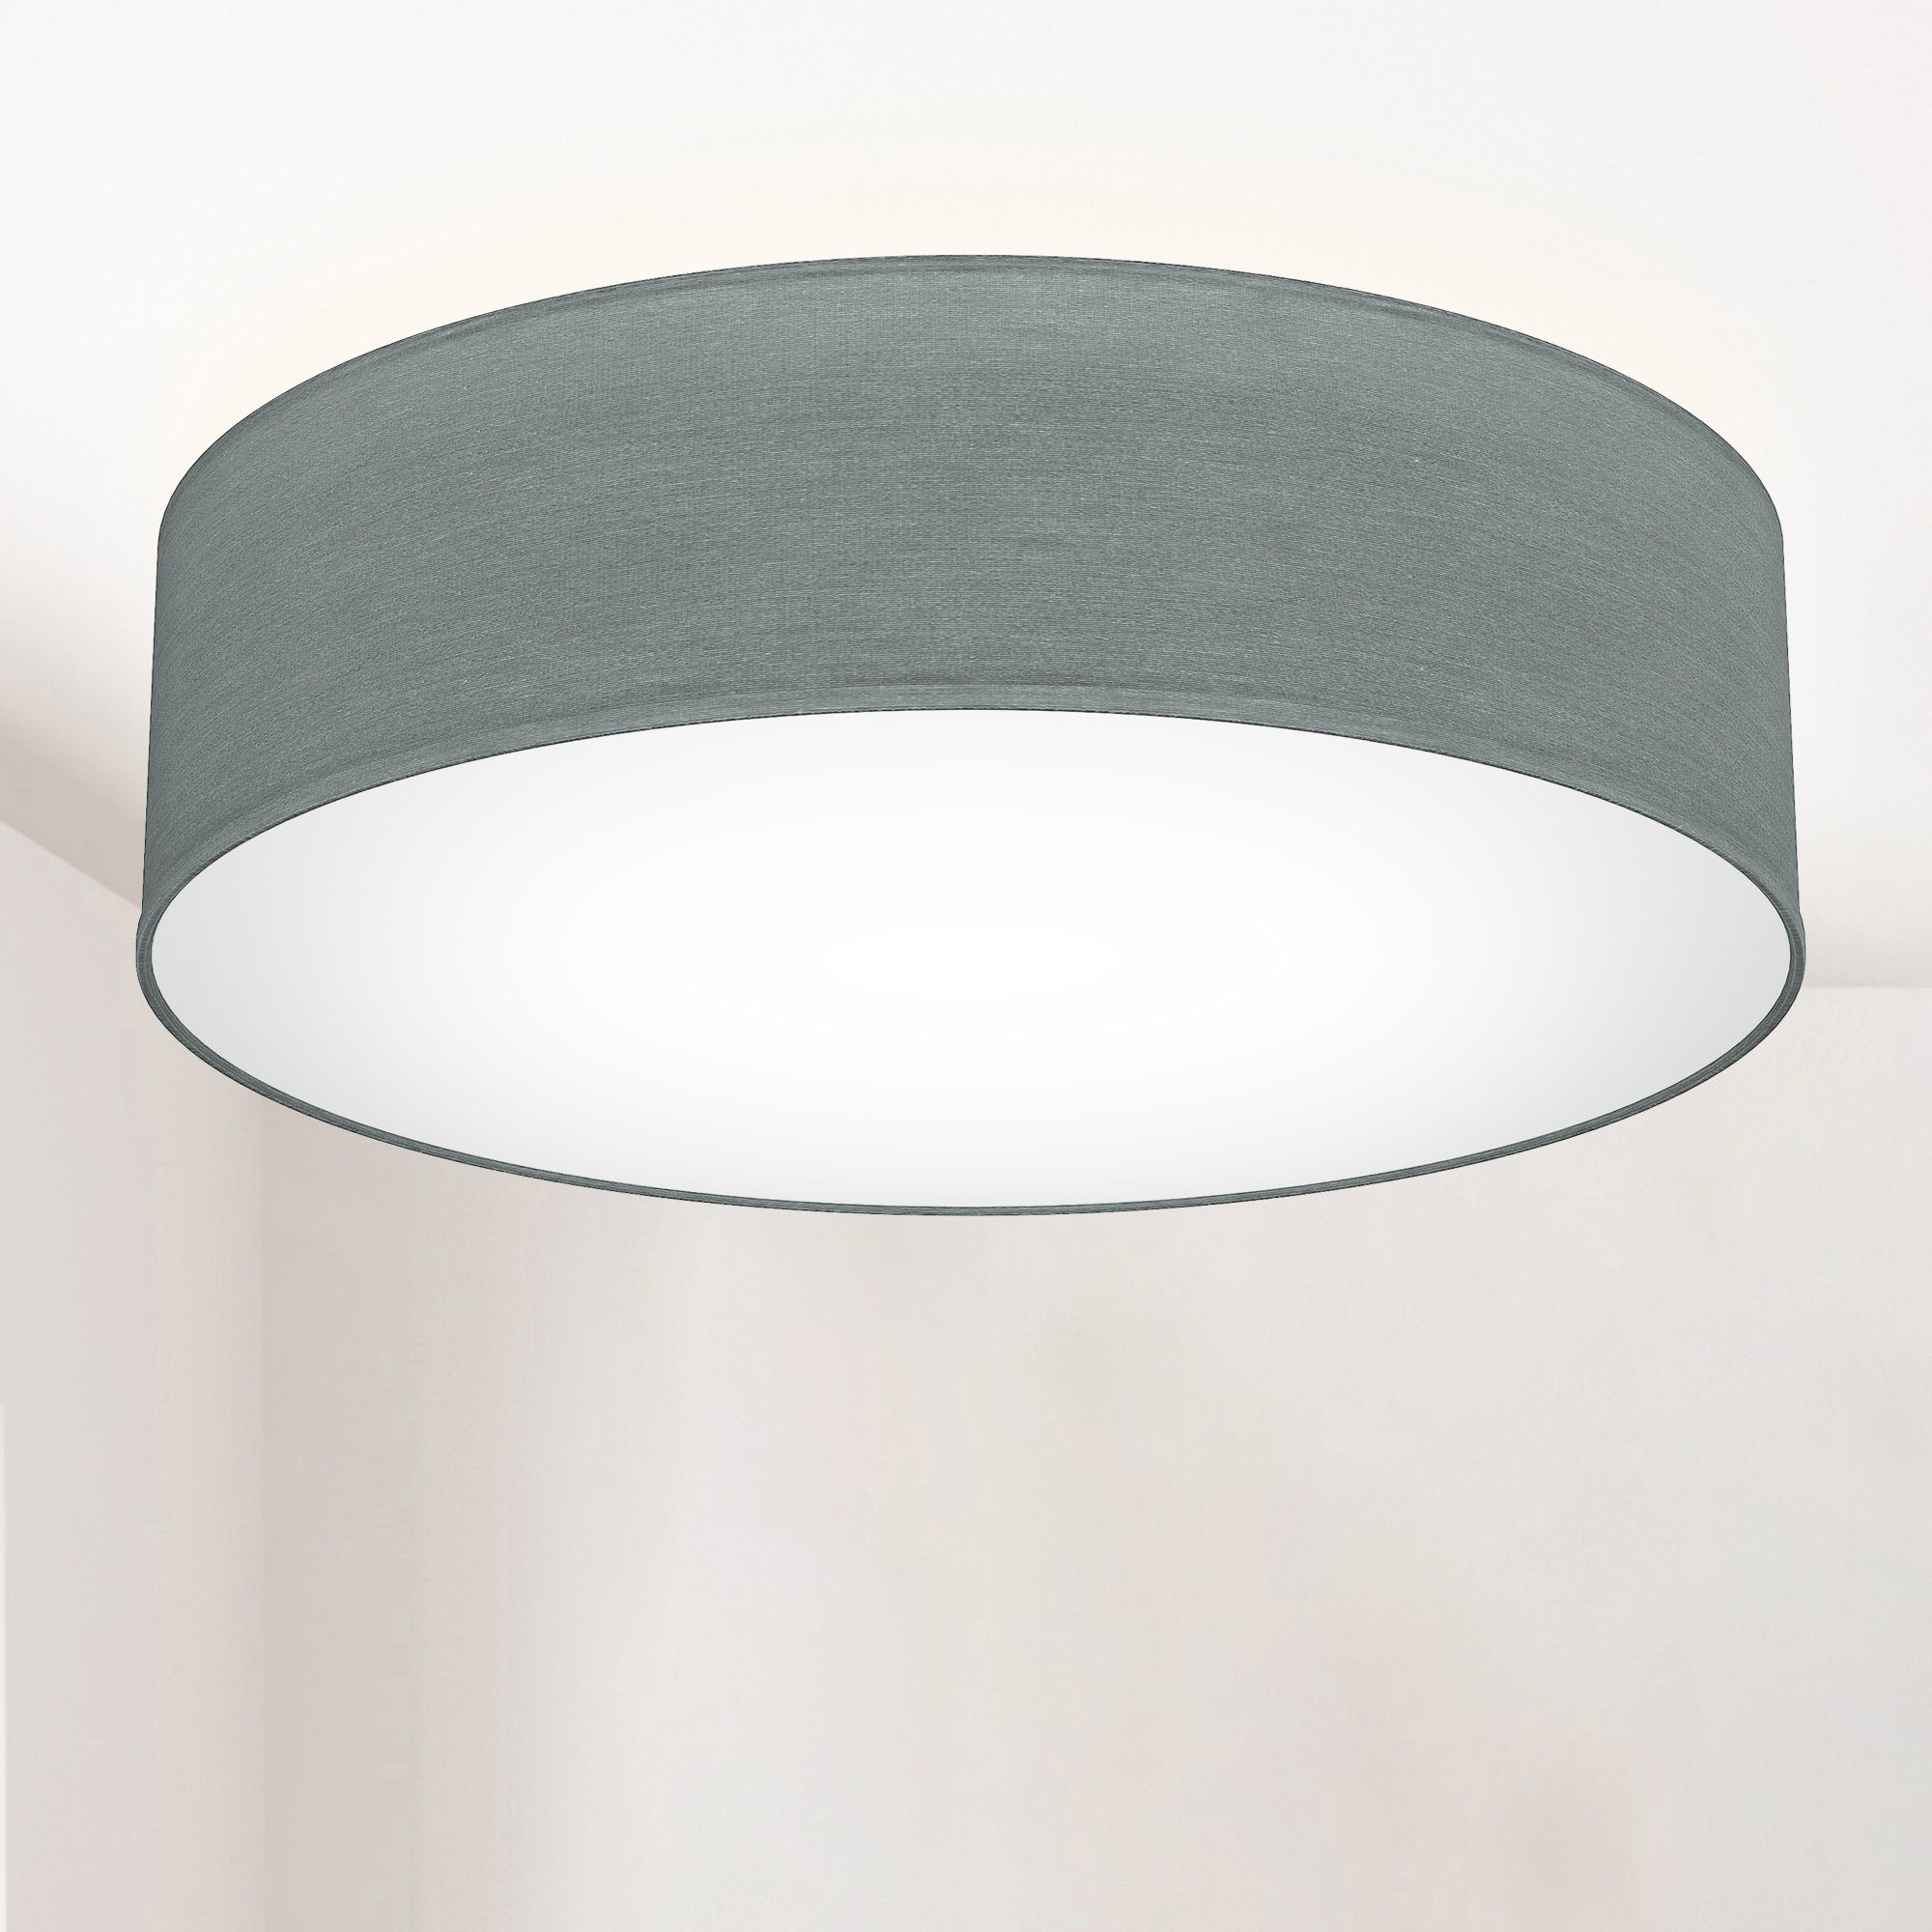 Decken Lampe Spot Leuchte Grau Chrom Beleuchtung Wohn Schlaf Zimmer Küche Diele 